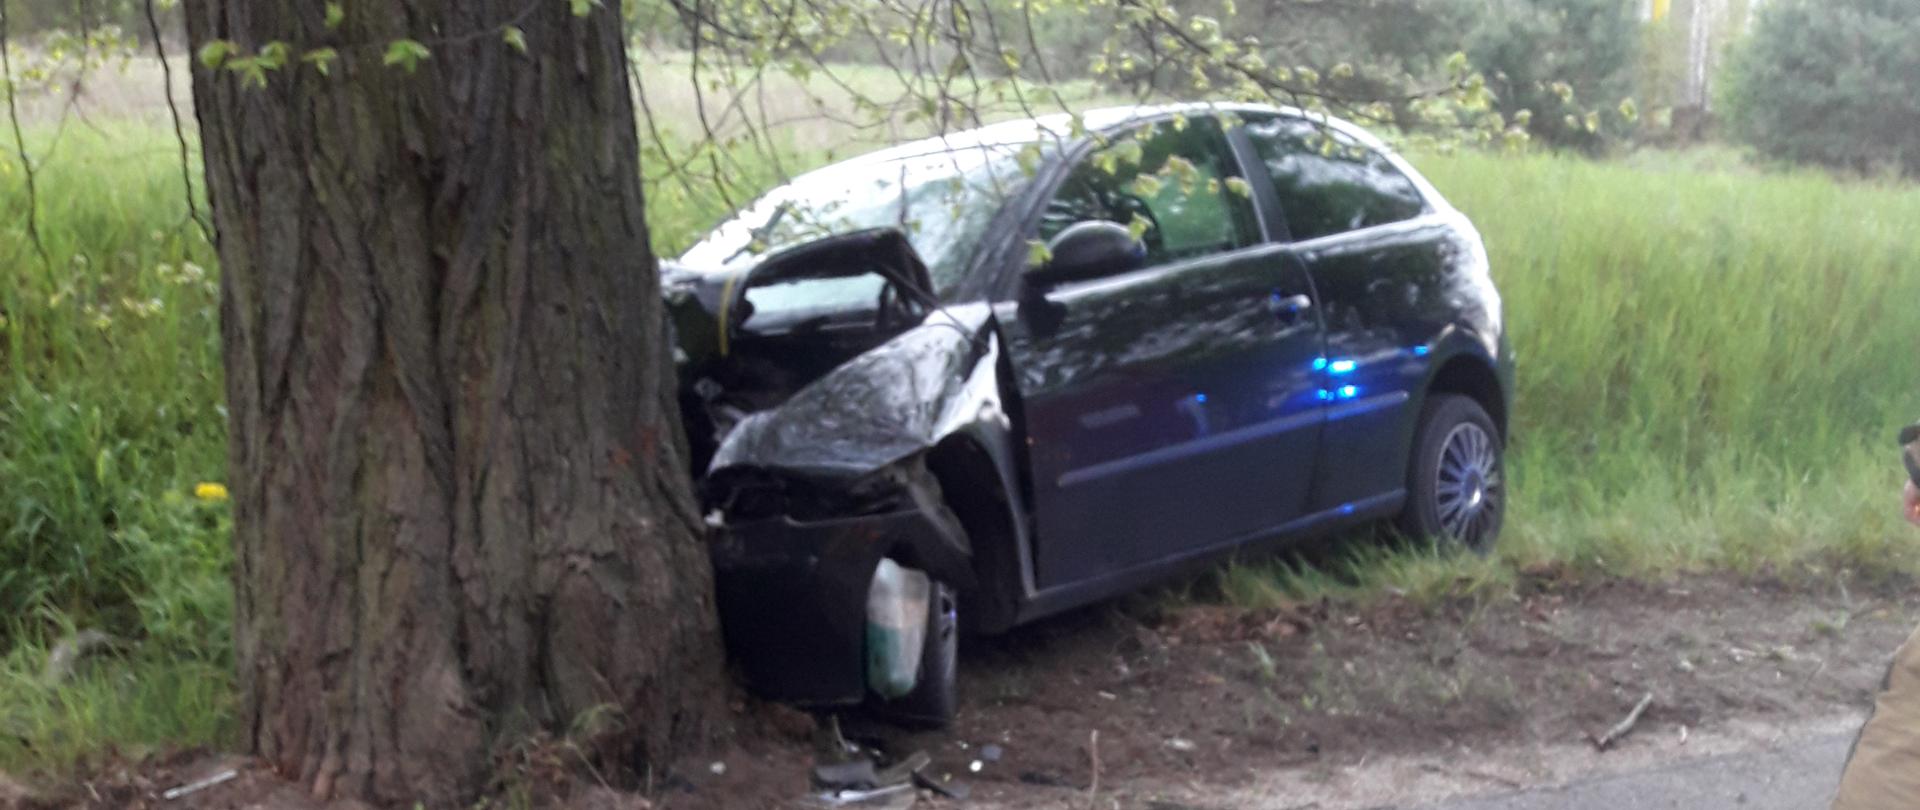 Uszkodzony pojazd stoi na poboczu przy drzewie